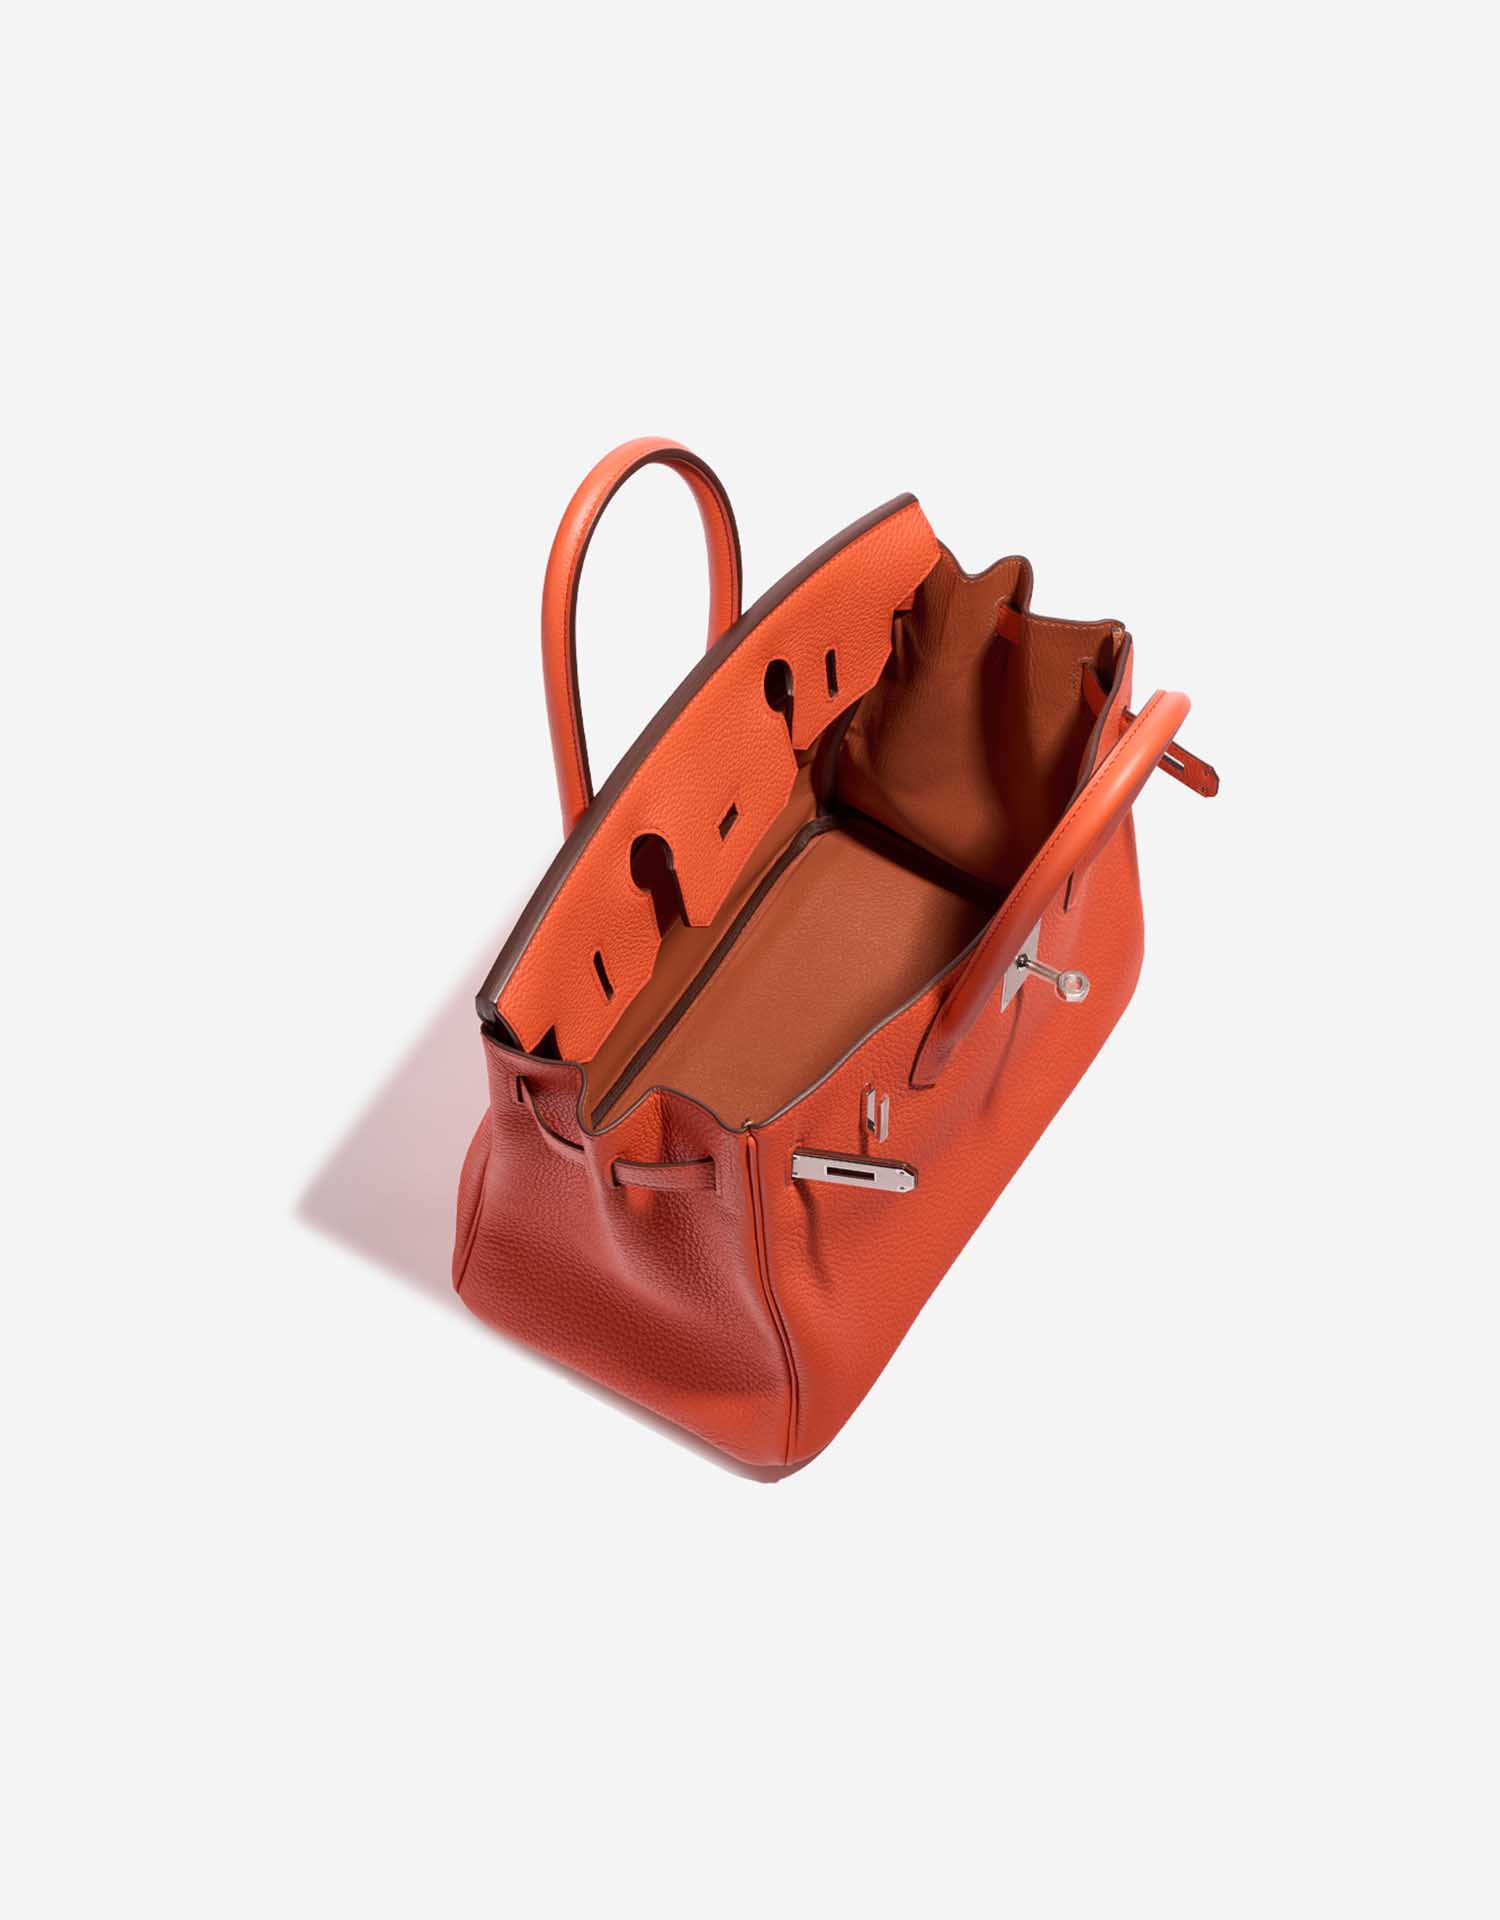 Hermès Birkin 30 OrangePoppy-Blush Inside | Verkaufen Sie Ihre Designer-Tasche auf Saclab.com